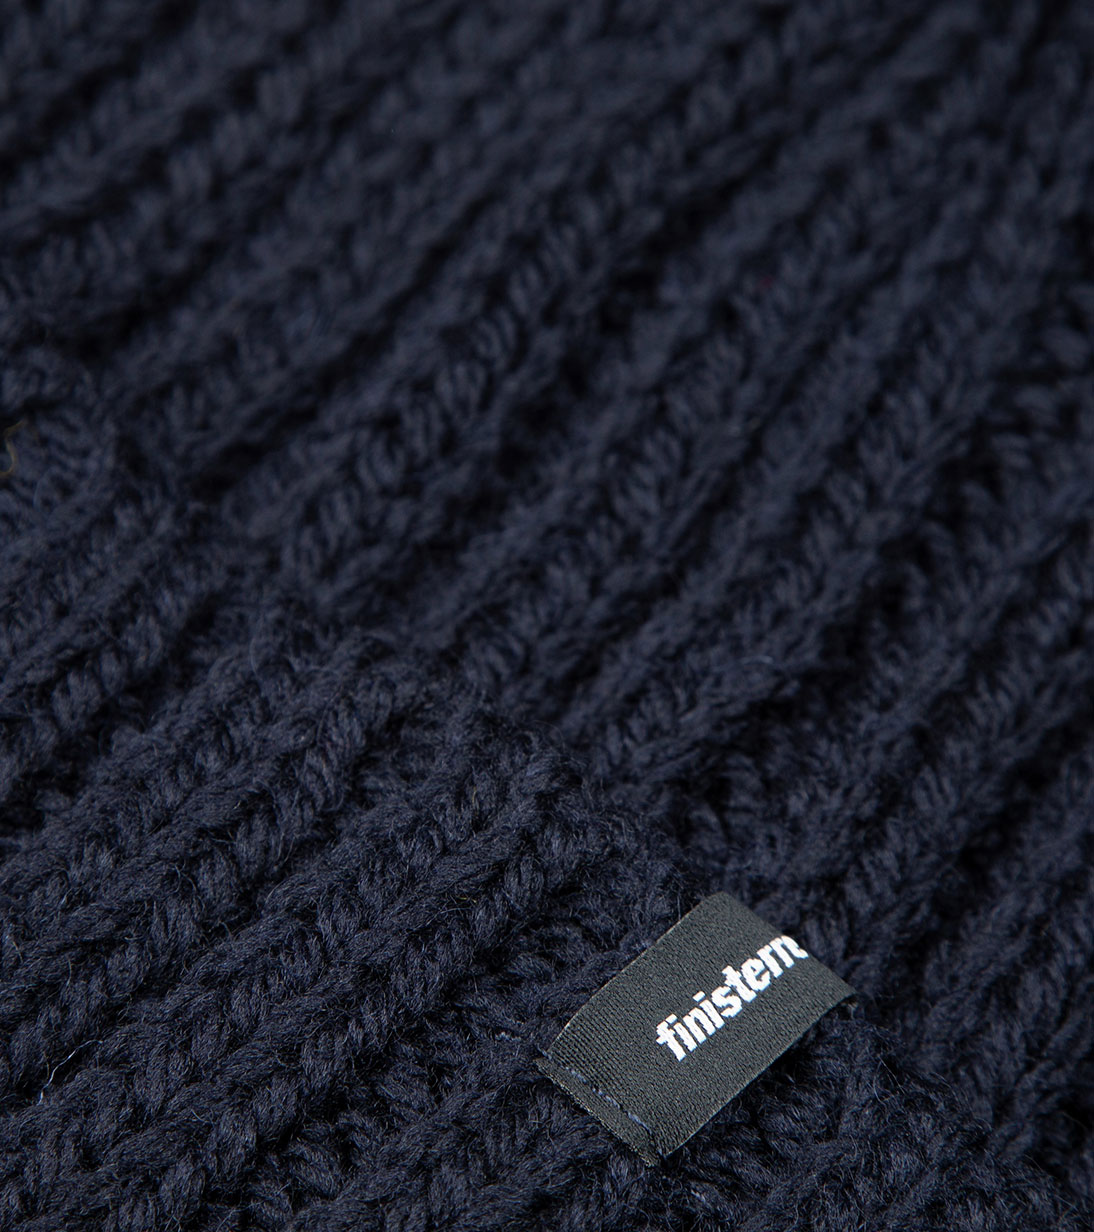 Made from: 100% Merino wool